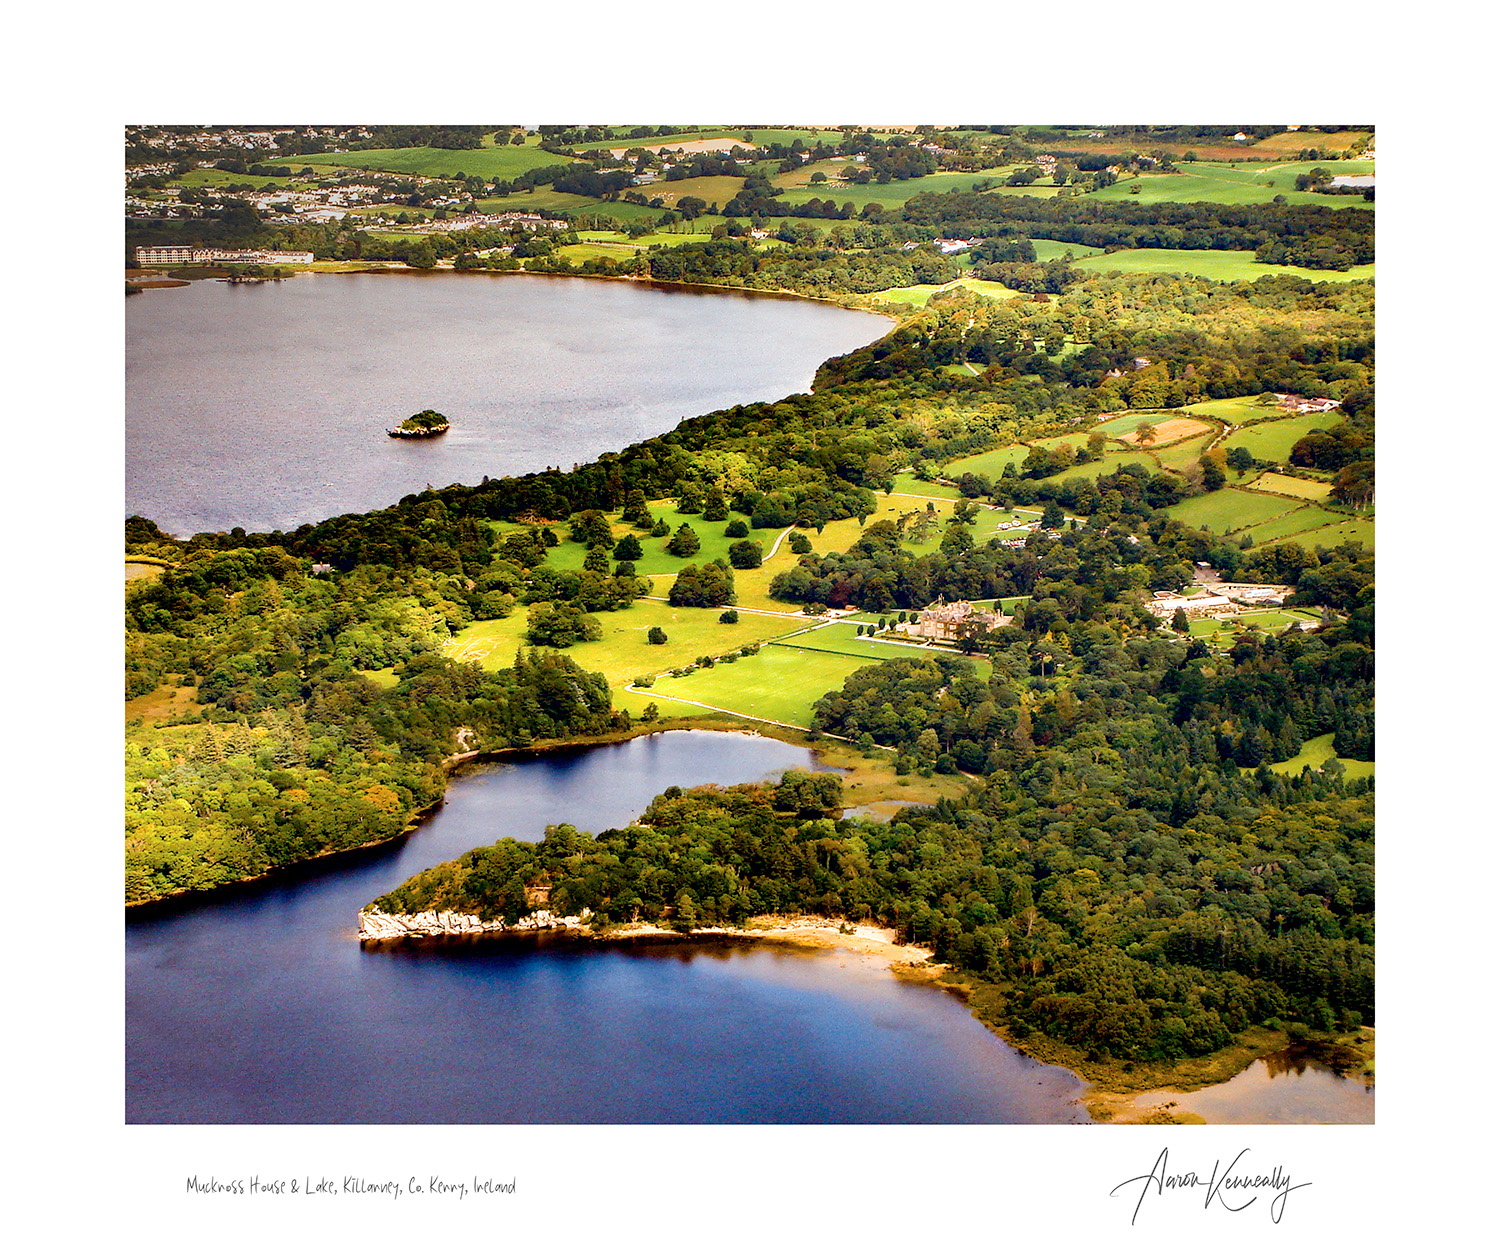 Killarney National Park, Co. Kerry, Ireland